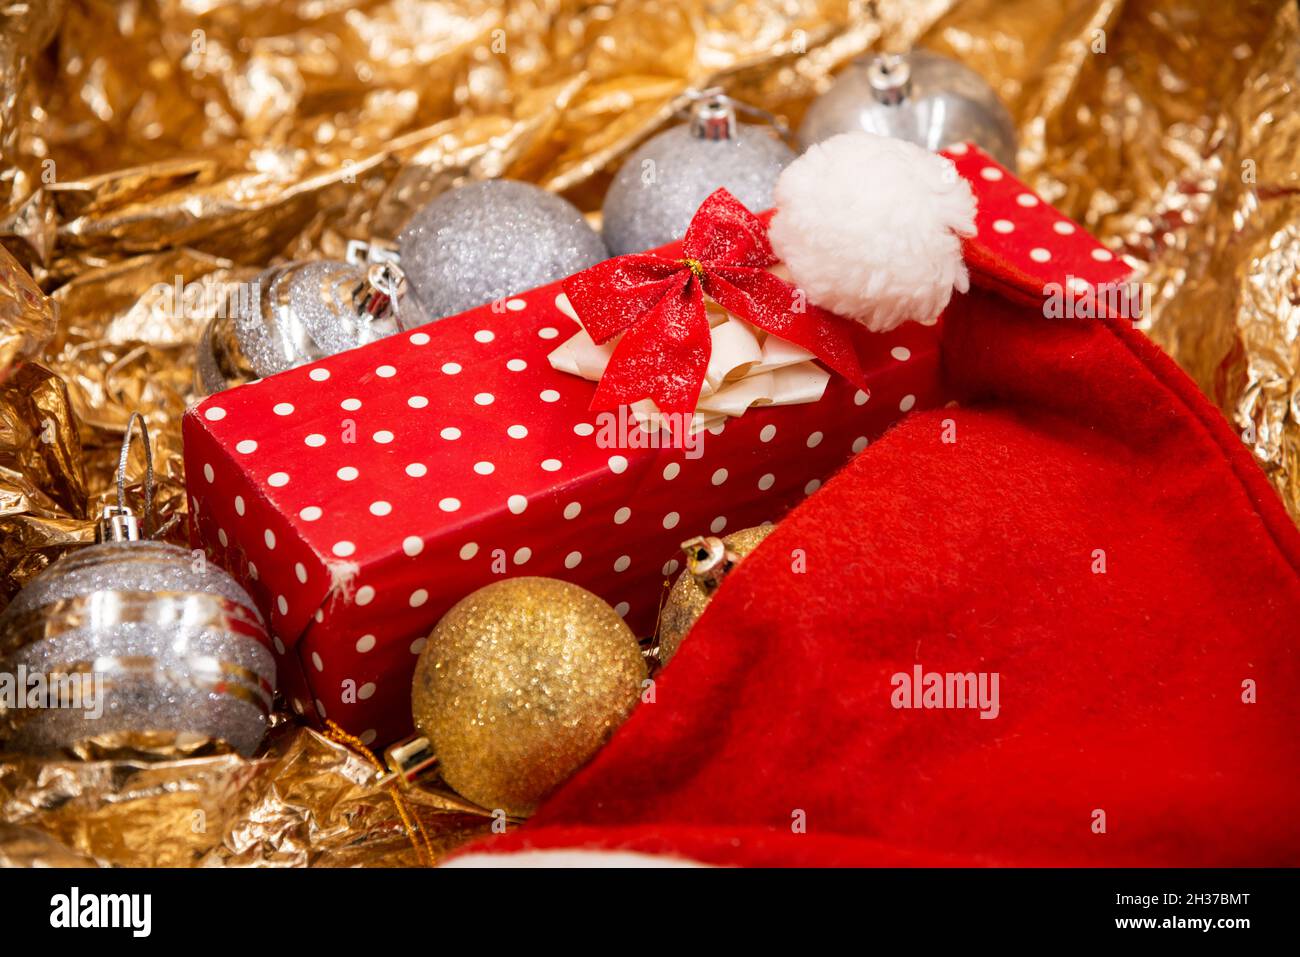 Cadeau de Noël décoré de papier à pois rouges et blancs avec glands rouges et décorations de boules d'arbre de Noël et chapeau rouge du père noël isolé sur un tibia Banque D'Images